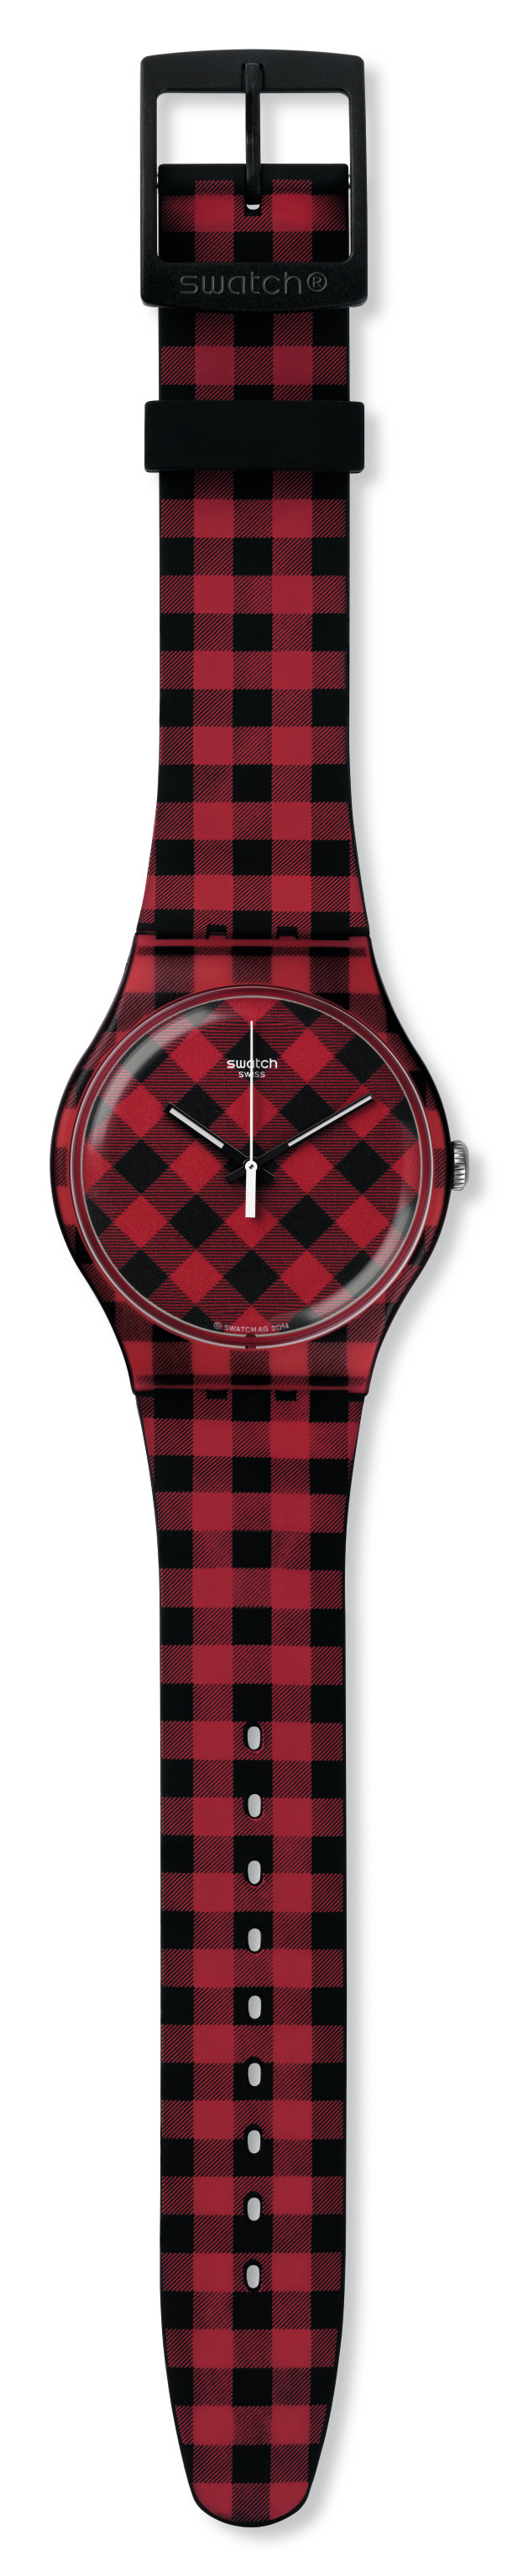 540円 贅沢 新品 腕時計 カジュアル スポーツ Swatch 黒 5